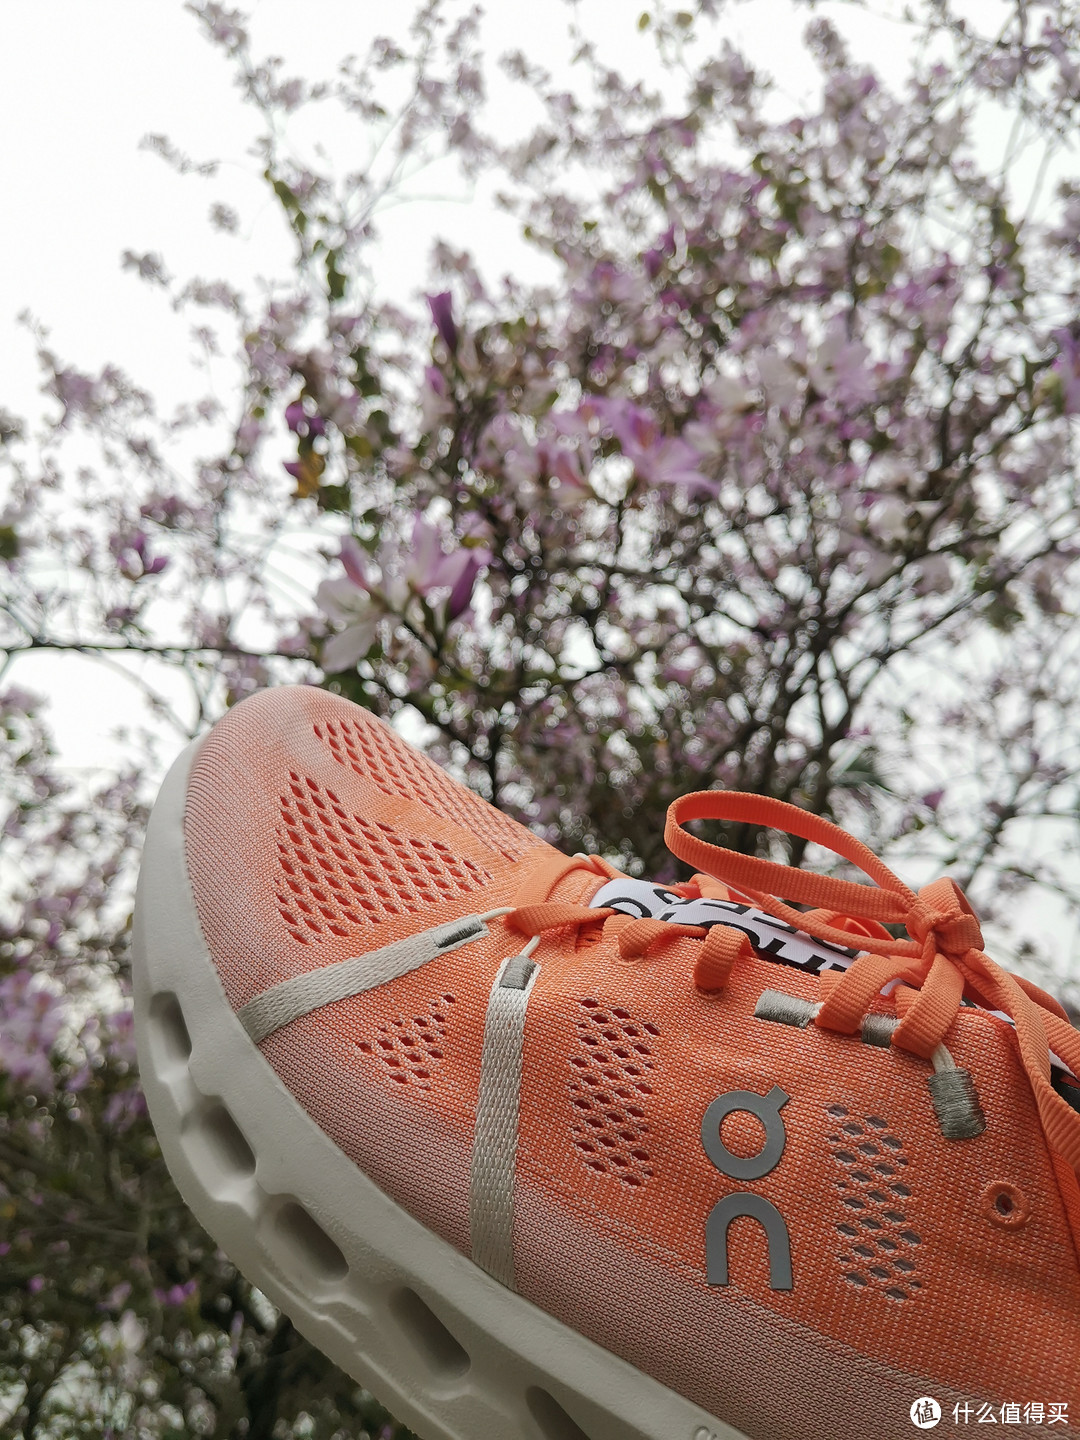 柳州满大街的紫荆花映衬着Cloudsurfer跑鞋